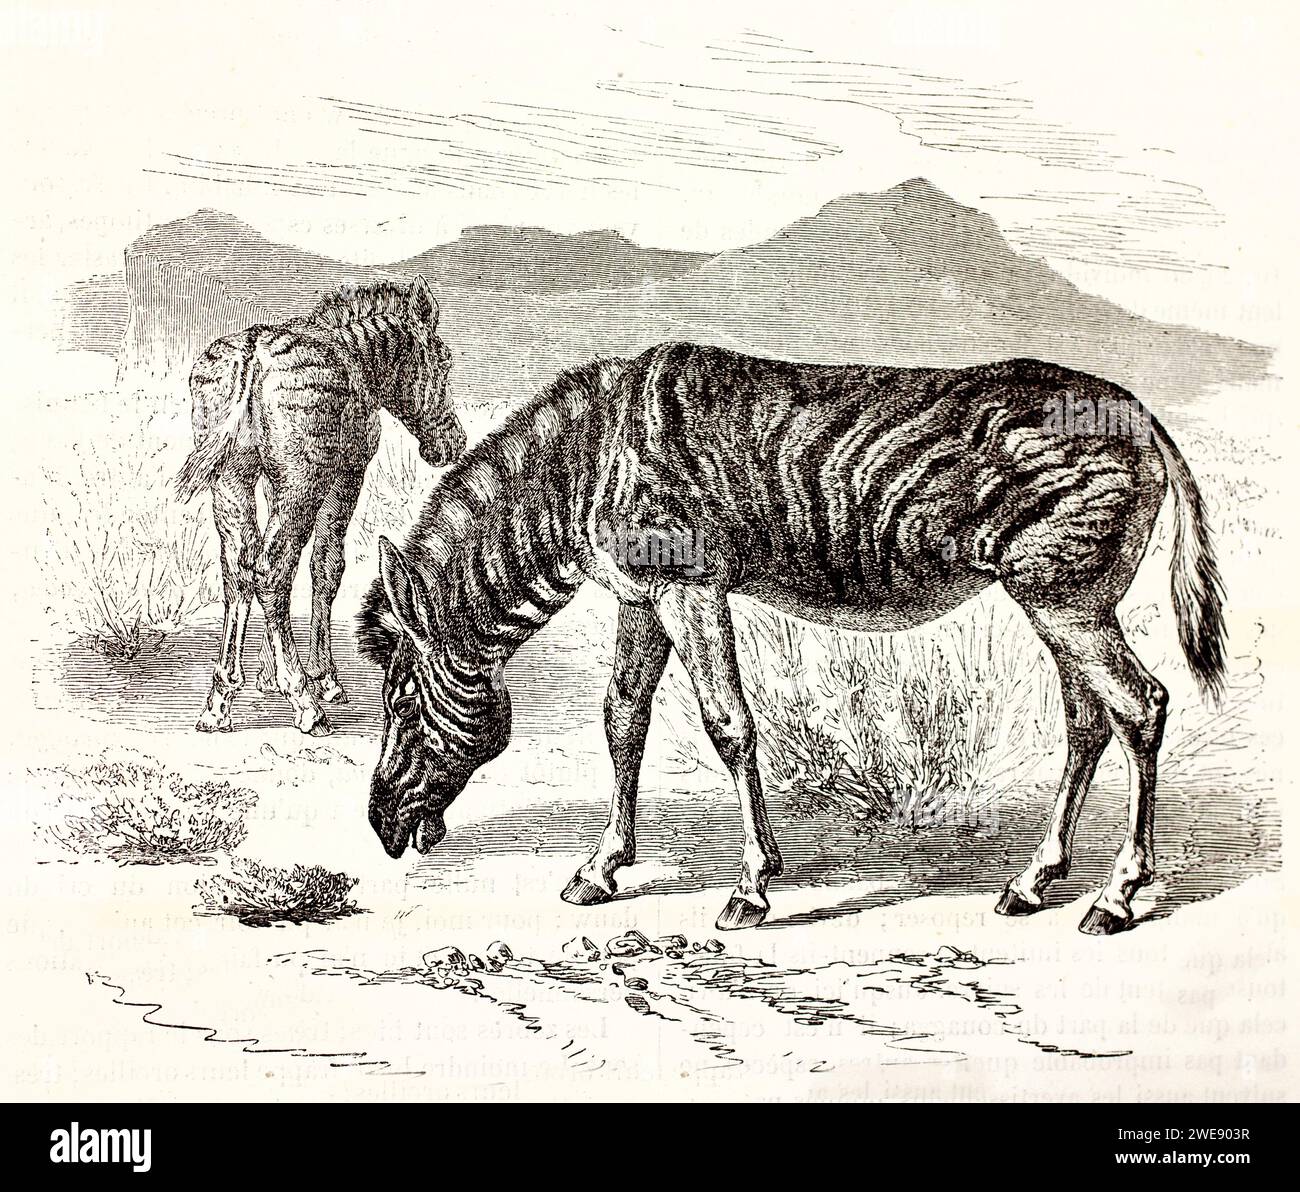 Vieille illustration gravée de Plains Zebra. Créé par Ktretschmer et Illner, publié sur Brehm, les Mammifères, Baillière et fils, Paris, 1878 Banque D'Images